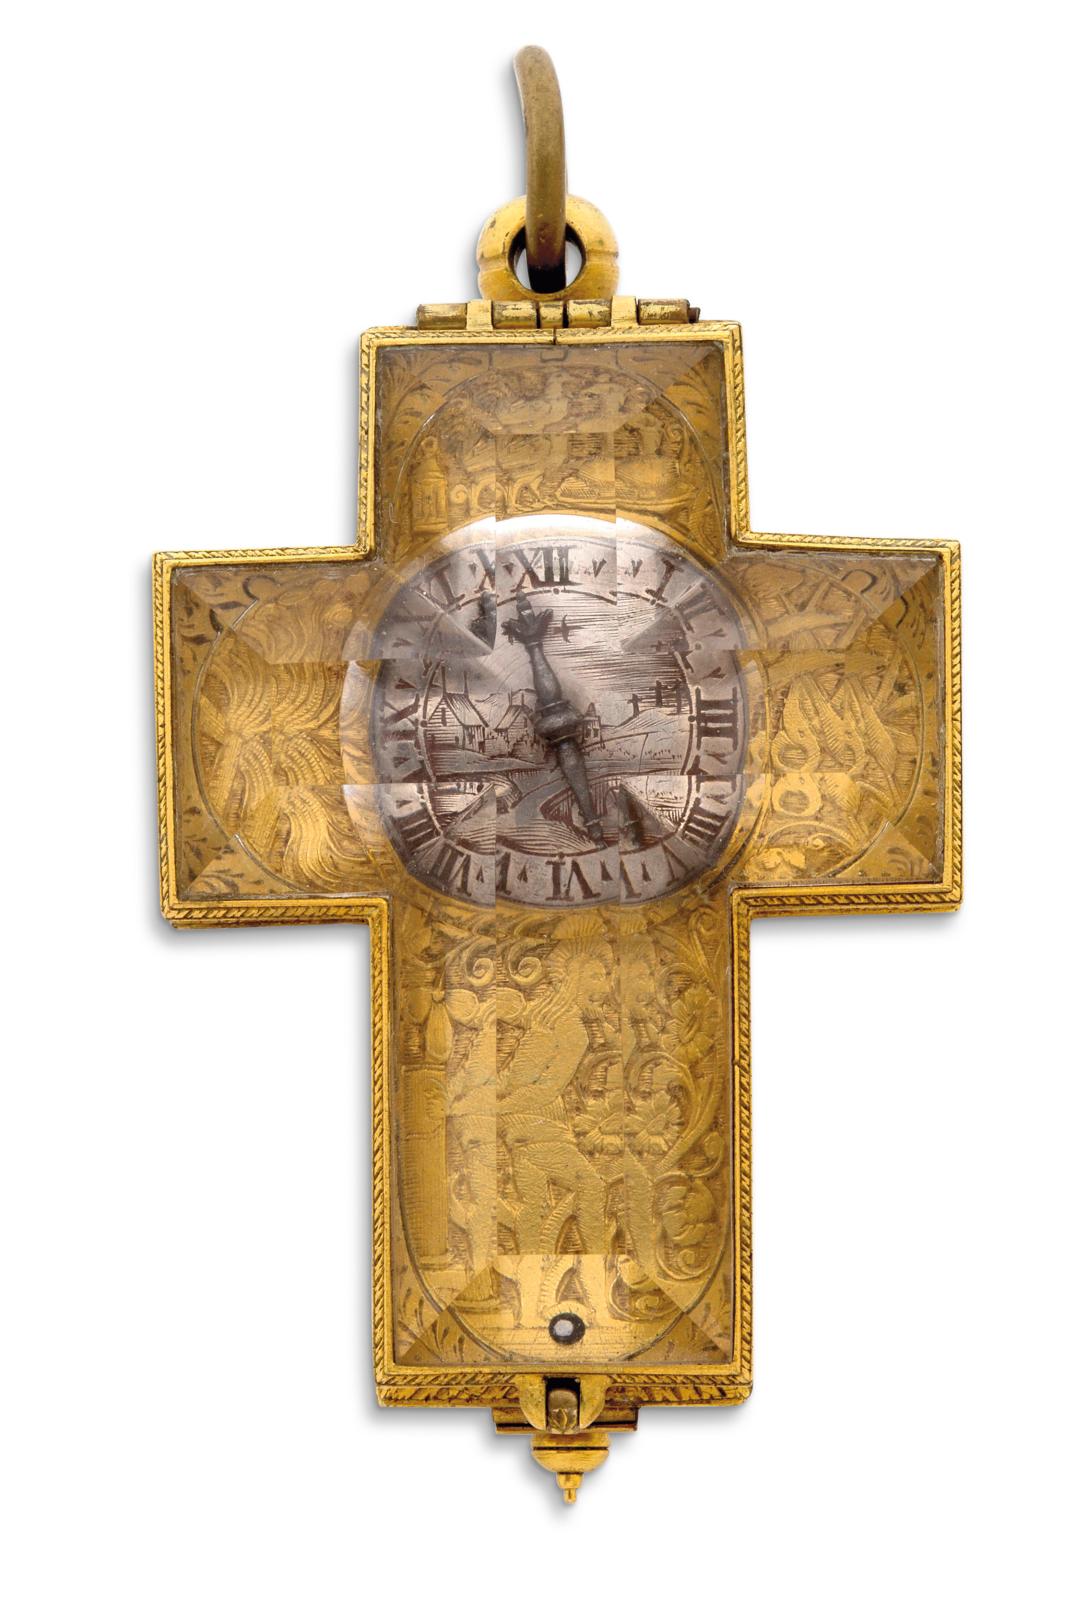 *Fonnereau, La Rochelle, milieu du XVIIe siècle, montre en forme de croix, en métal doré et cristal de roche, pré-balancier spiral, cadran